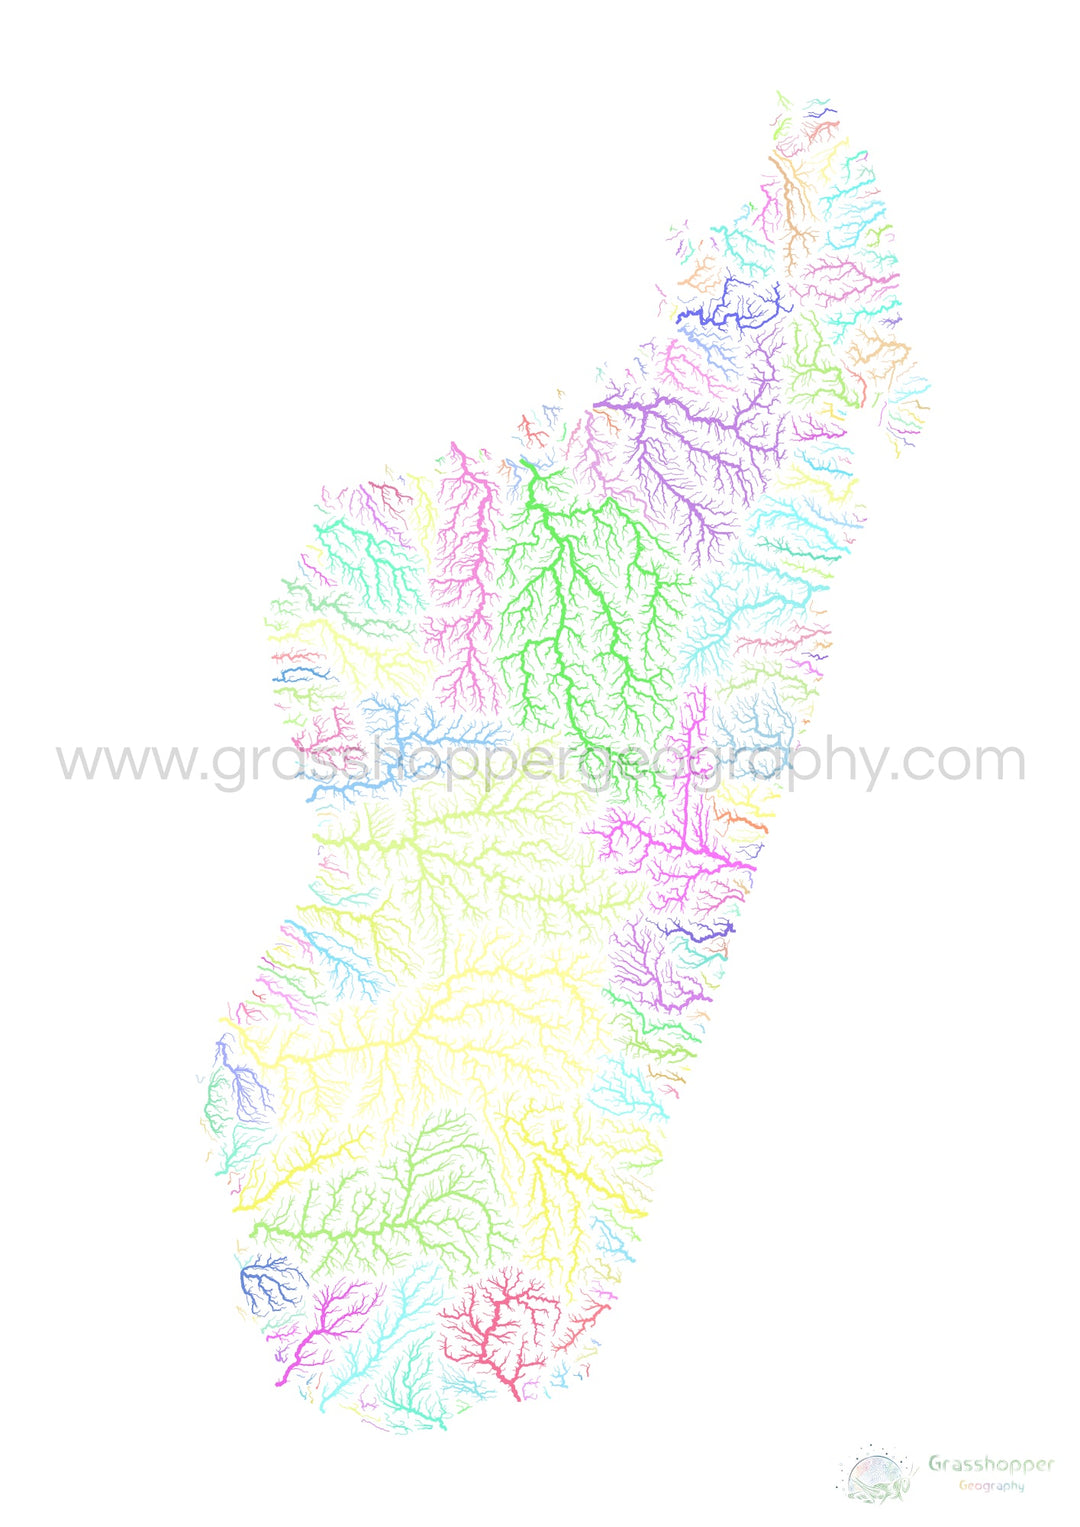 Madagascar - Carte des bassins fluviaux, pastel sur blanc - Fine Art Print